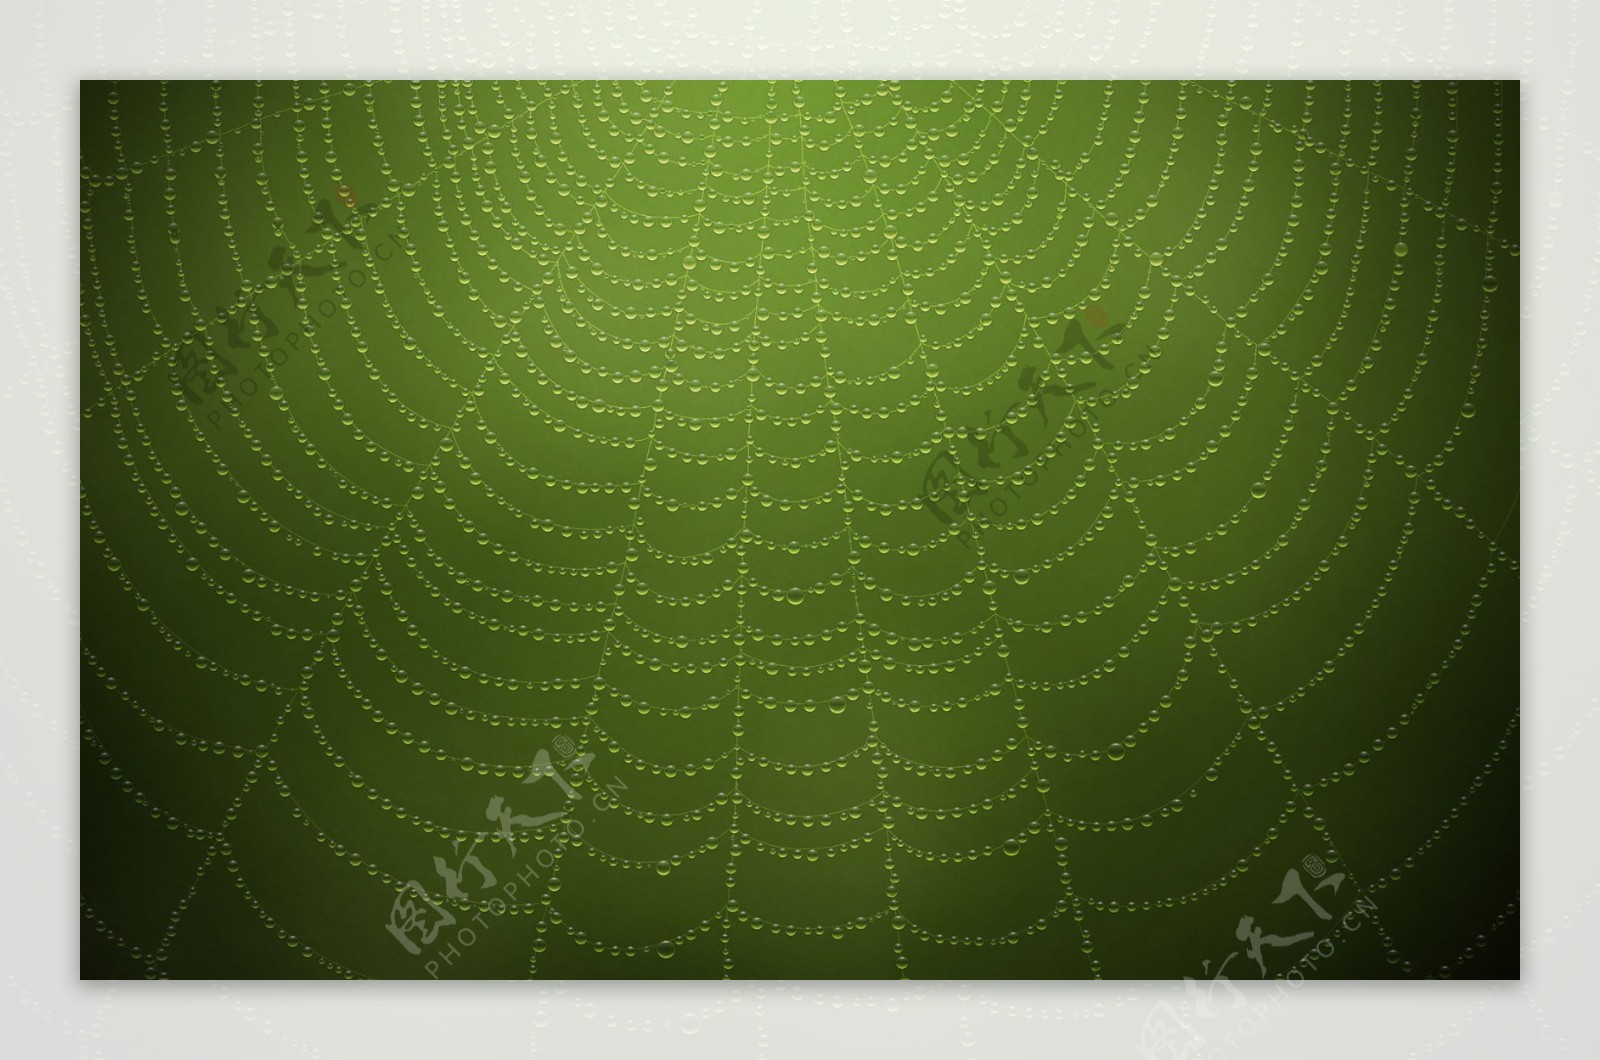 绿色蜘蛛网背景